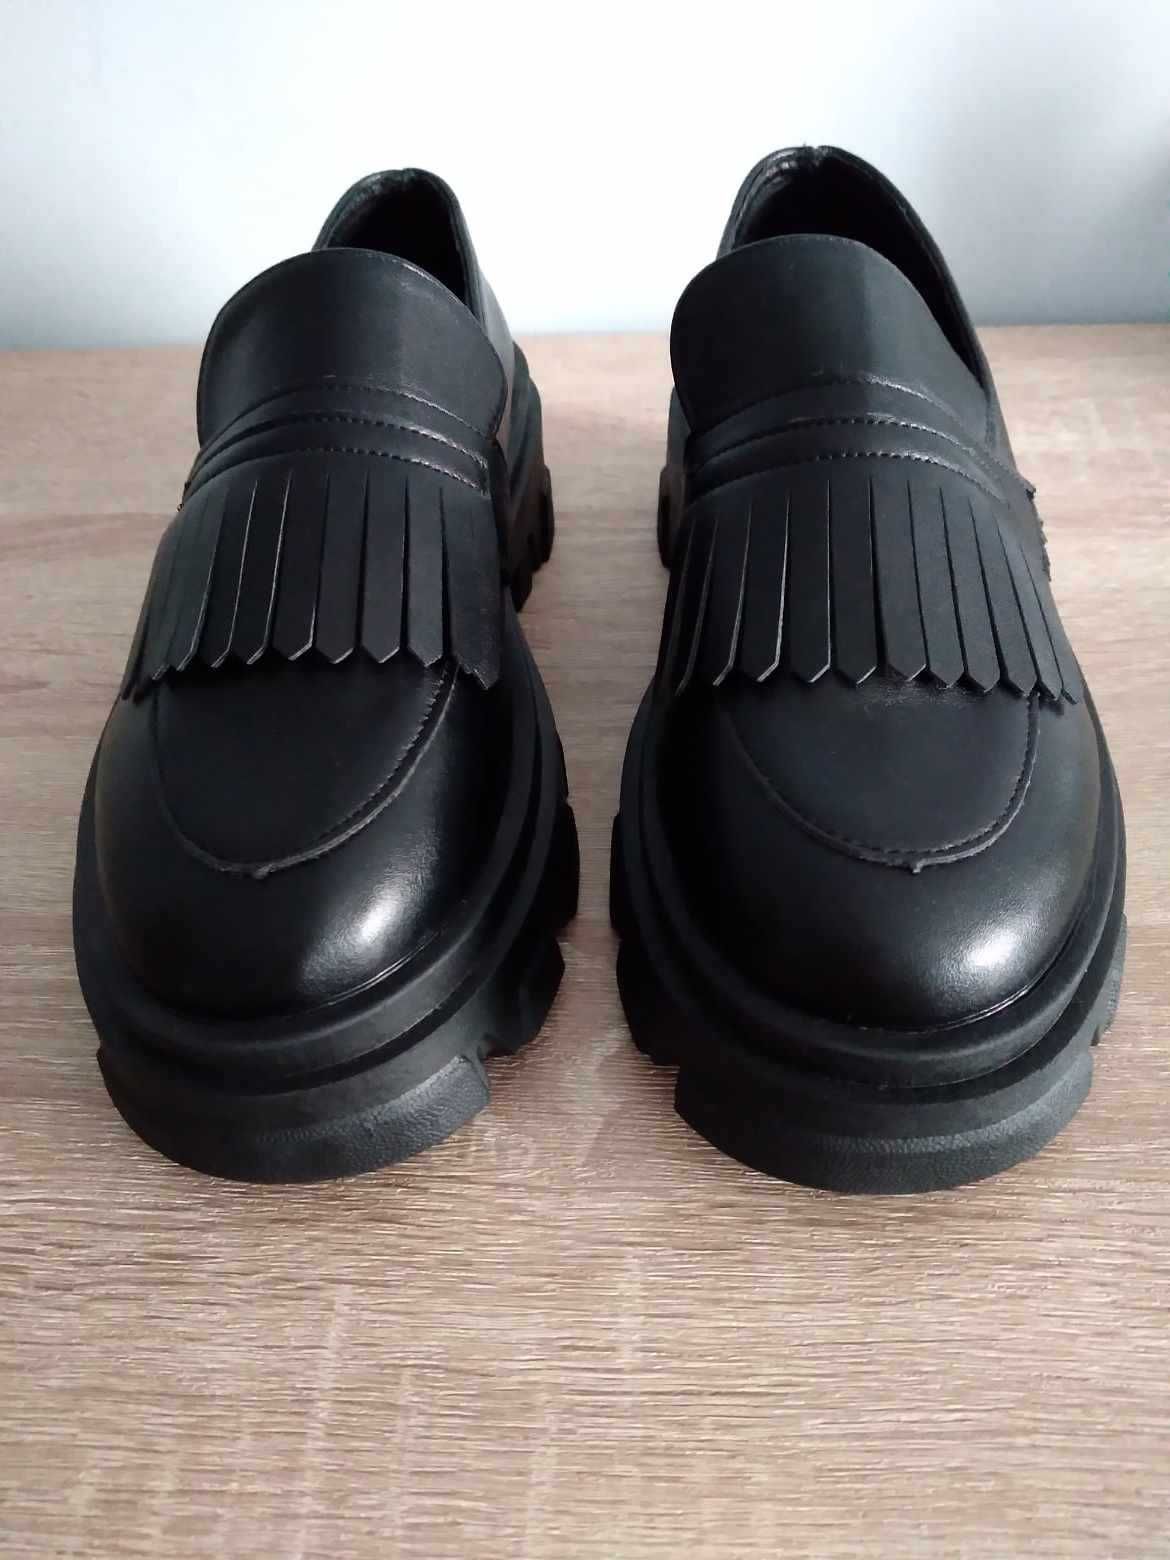 NIEUŻYWANE buty damskie typu mokasyny na platformie